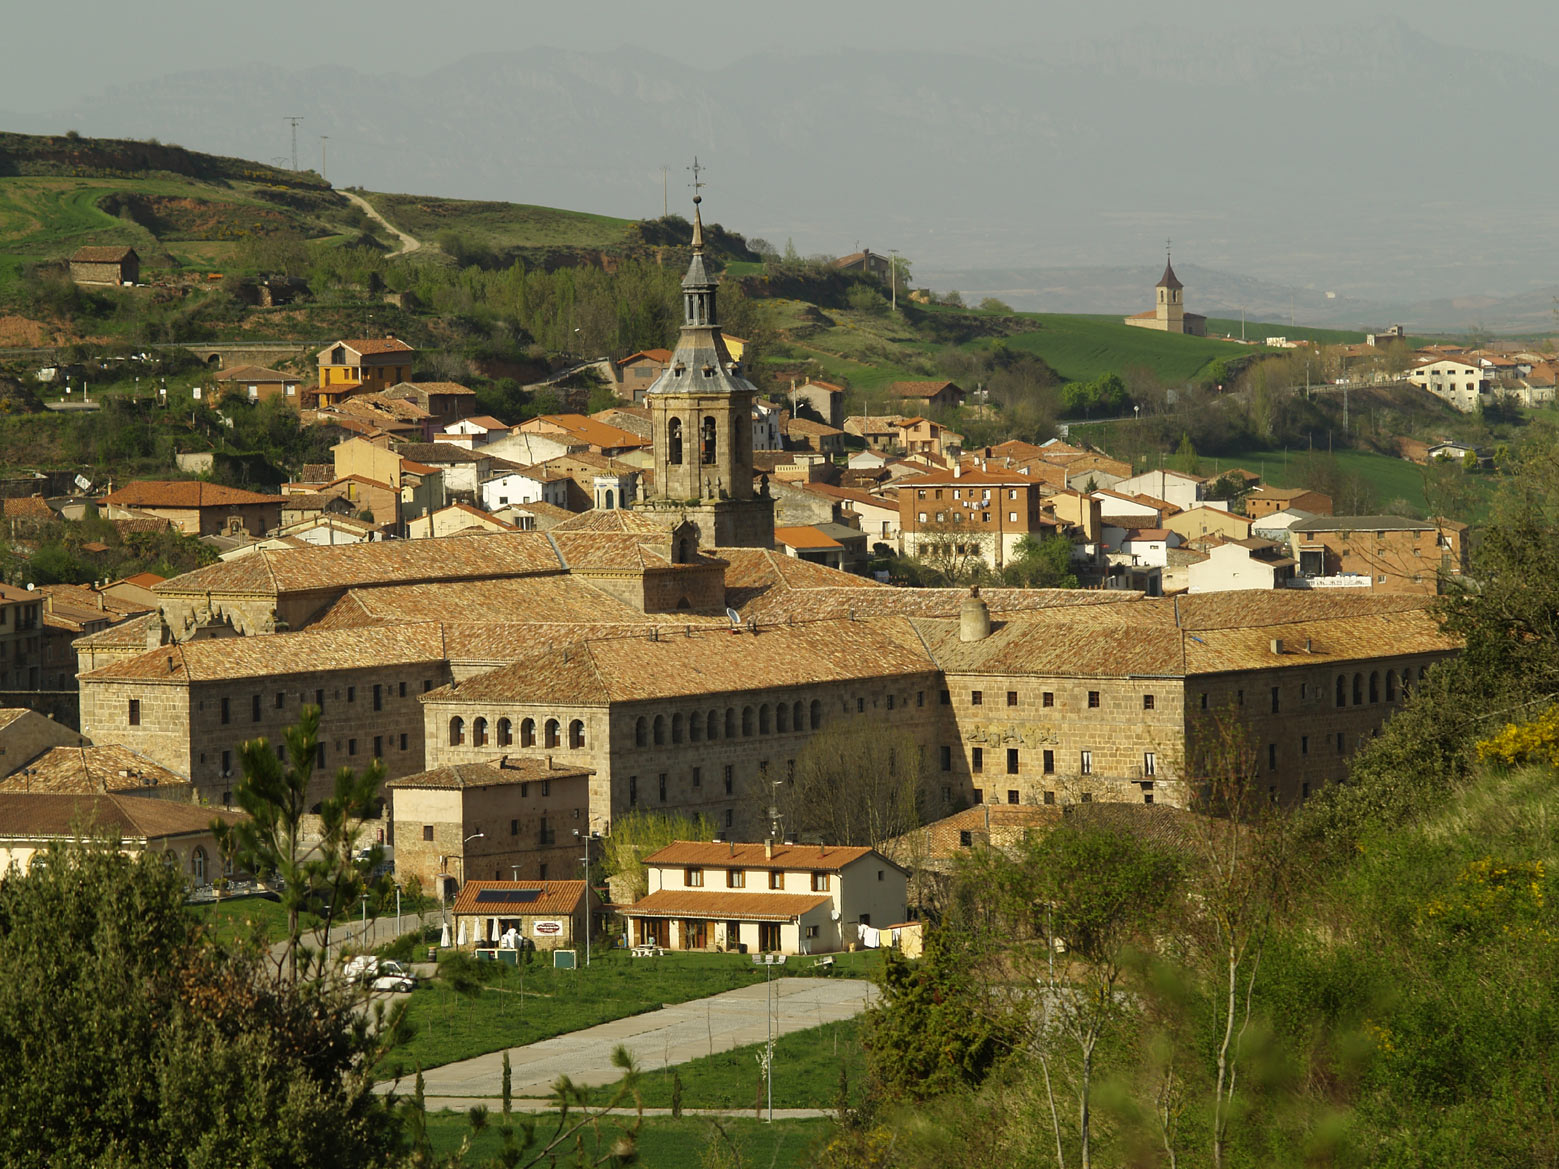 Vista general de San Millán de la Cogolla. De Cenobio - Trabajo propio, CC BY-SA 3.0, https://commons.wikimedia.org/w/index.php?curid=3834790